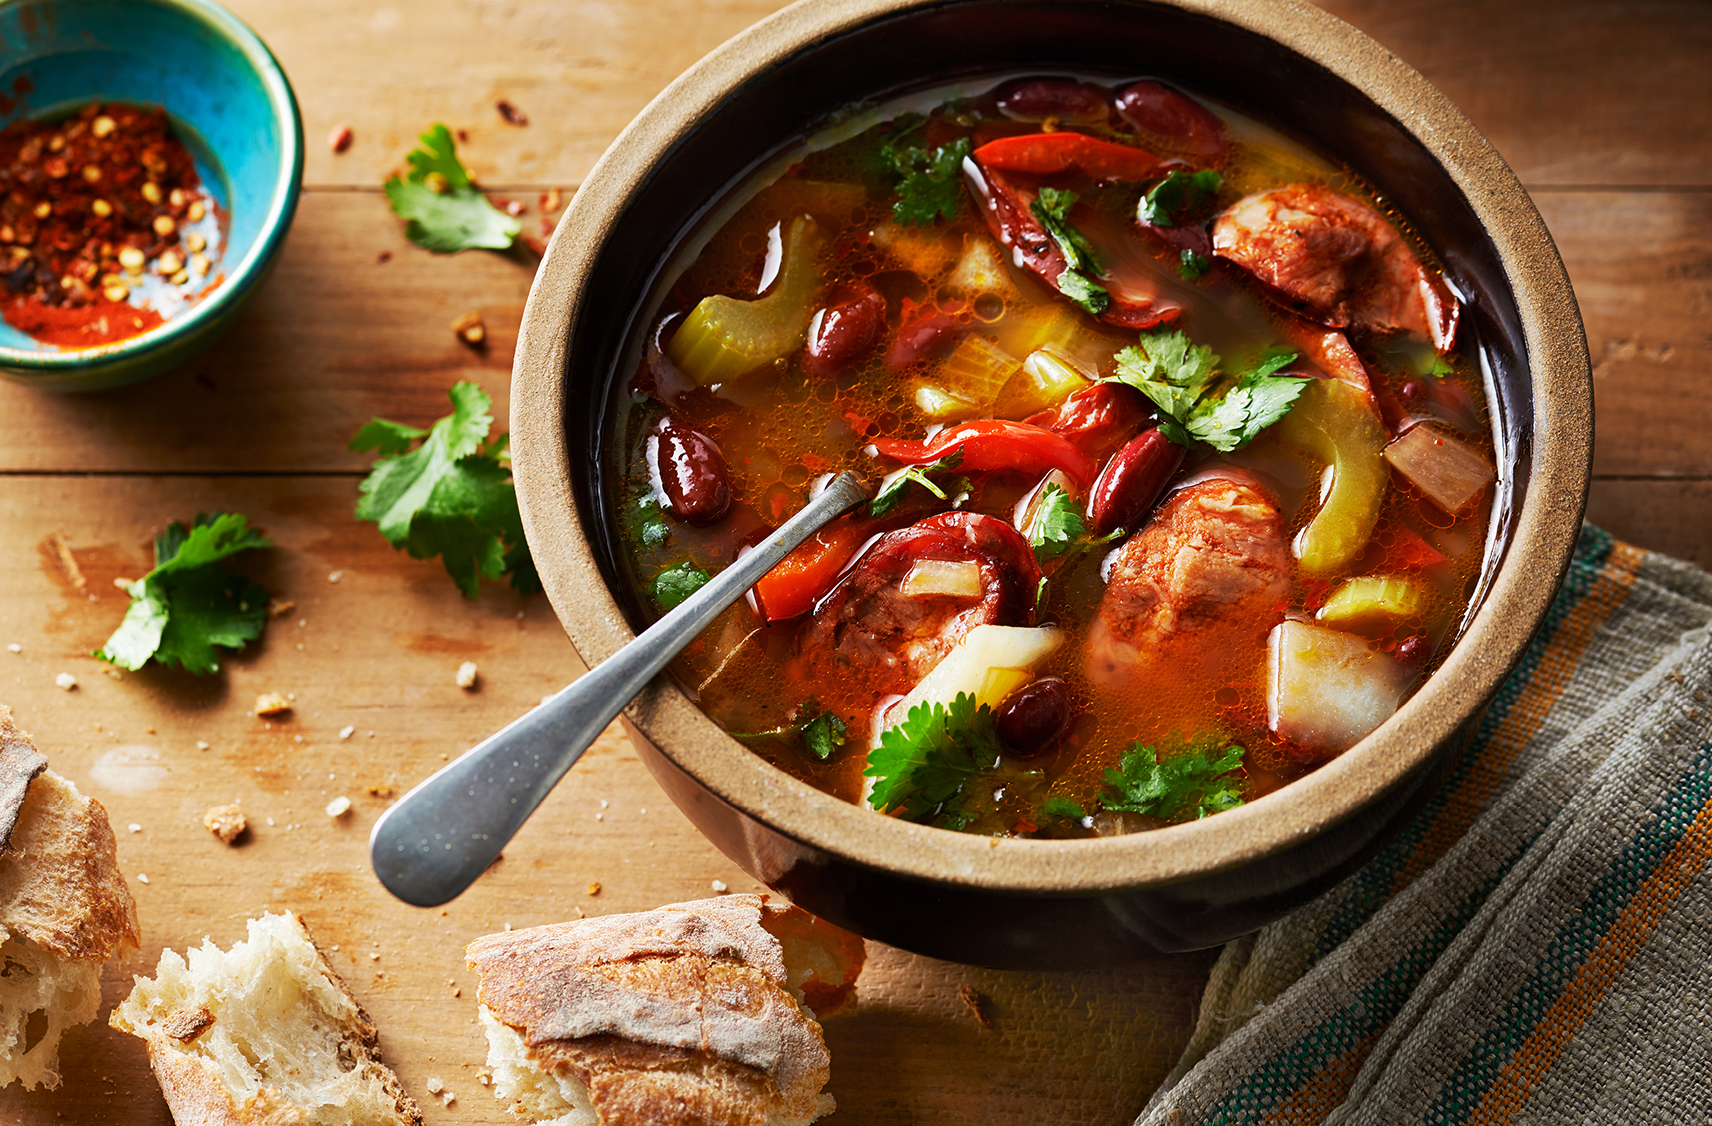 Un ragoût à l'espagnole au chorizo et aux haricots rouges servi dans un petit bol à soupe en céramique brune. Le ragoût est garni de persil haché et accompagné de morceaux de pain grillé pour tremper